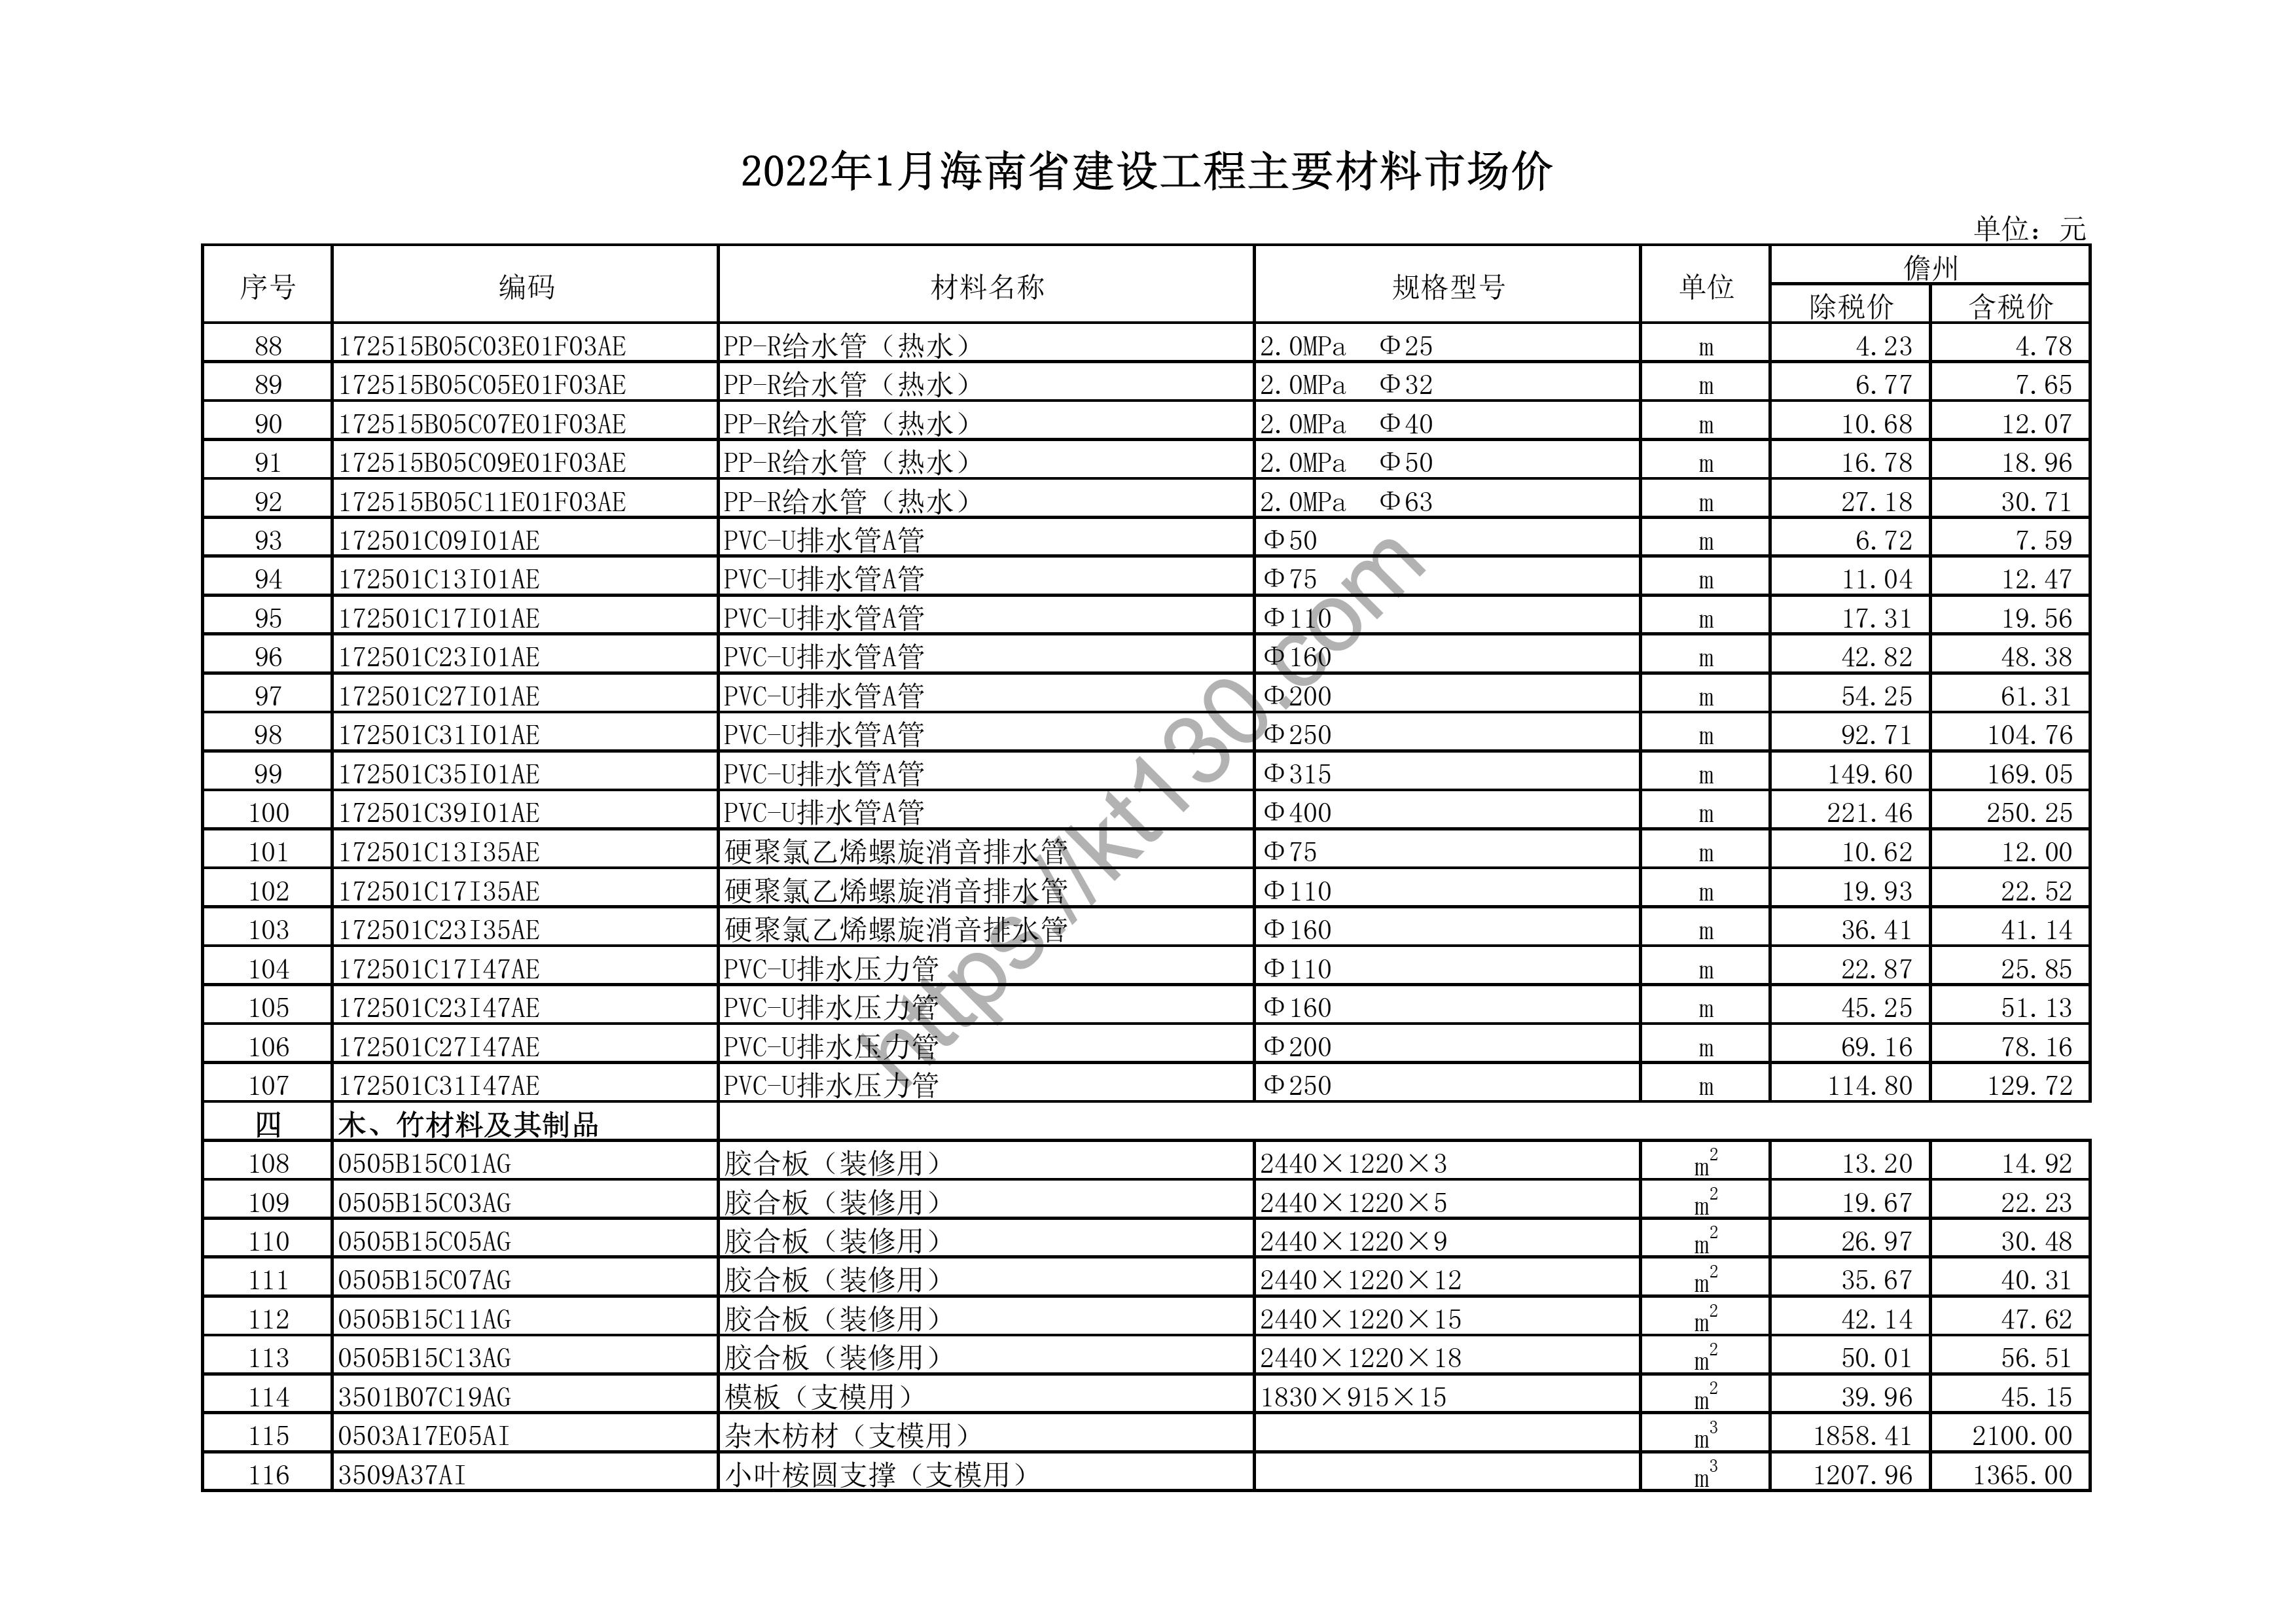 海南省2022年1月建筑材料价_管材_43722